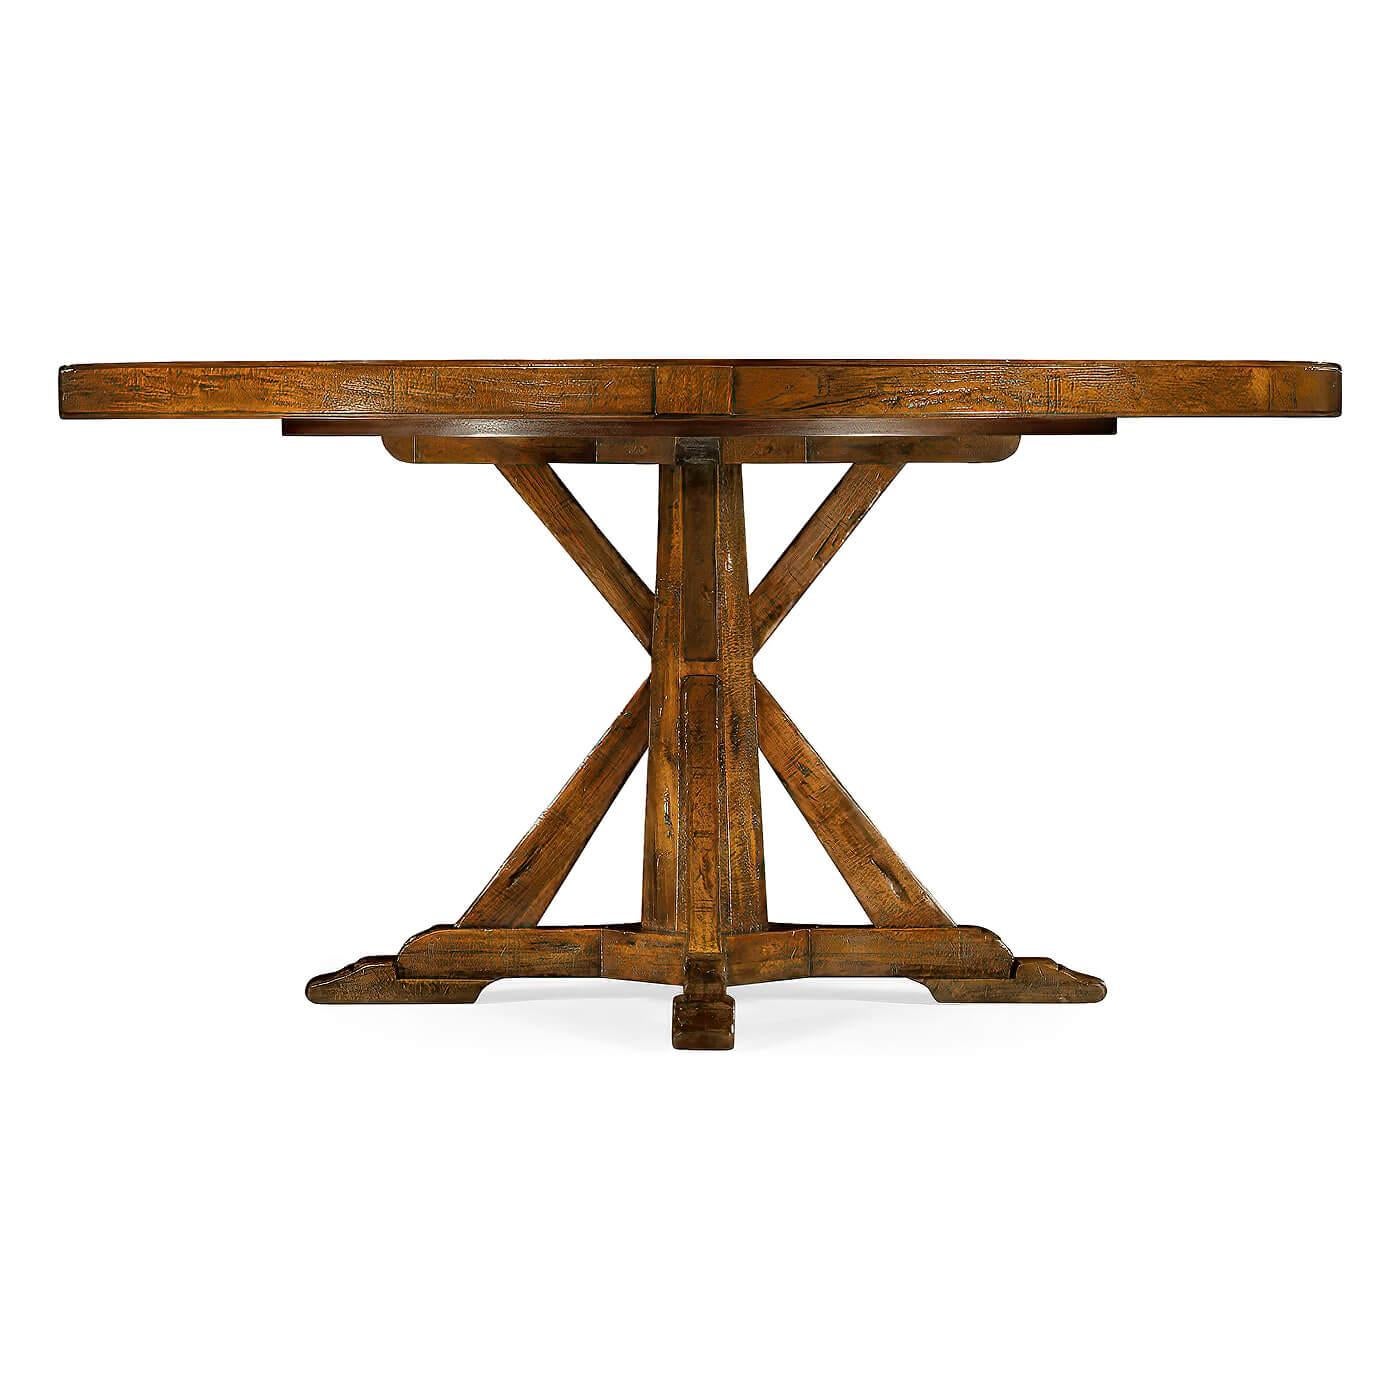 Der runde Esstisch ist in einem warmen Nussbaumfarbton gehalten, hat ein rustikales Finish mit sichtbaren Sägespuren und steht auf einem Sockel im Landhausstil. Der Tisch verfügt außerdem über eine eingebaute, selbstaufbewahrende